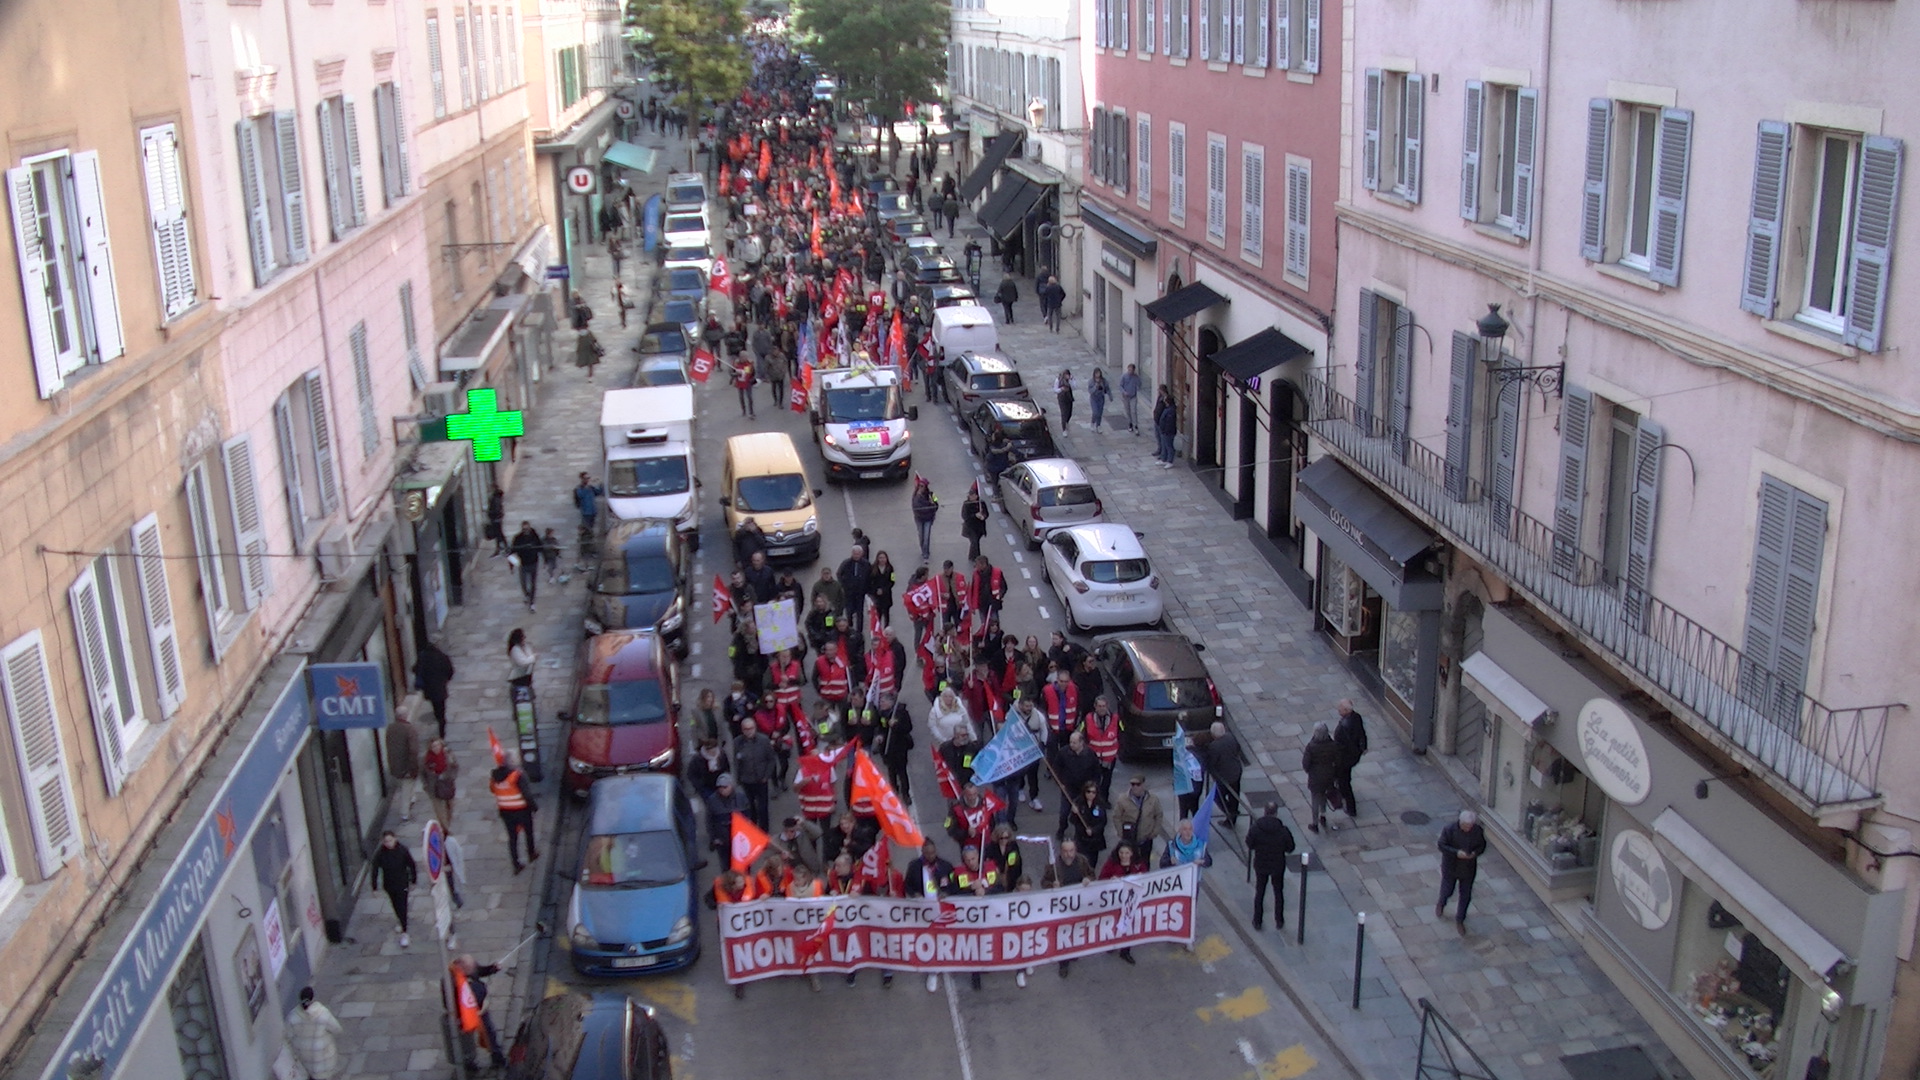 Grève contre la réforme des retraites : plus de 2 000 personnes dans les rues de Bastia